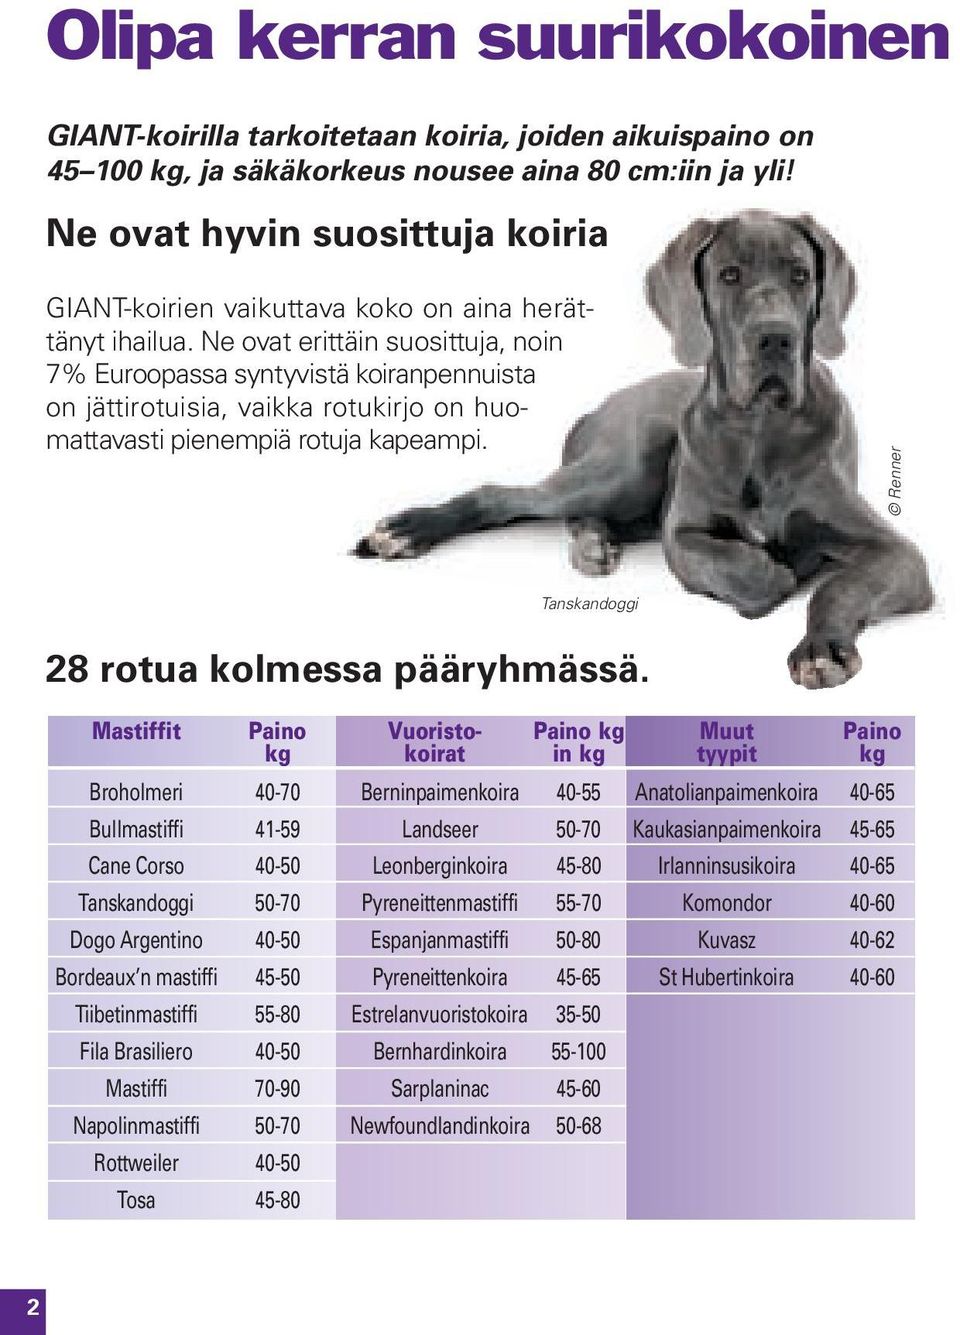 Ne ovat erittäin suosittuja, noin 7% Euroopassa syntyvistä koiranpennuista on jättirotuisia, vaikka rotukirjo on huomattavasti pienempiä rotuja kapeampi.